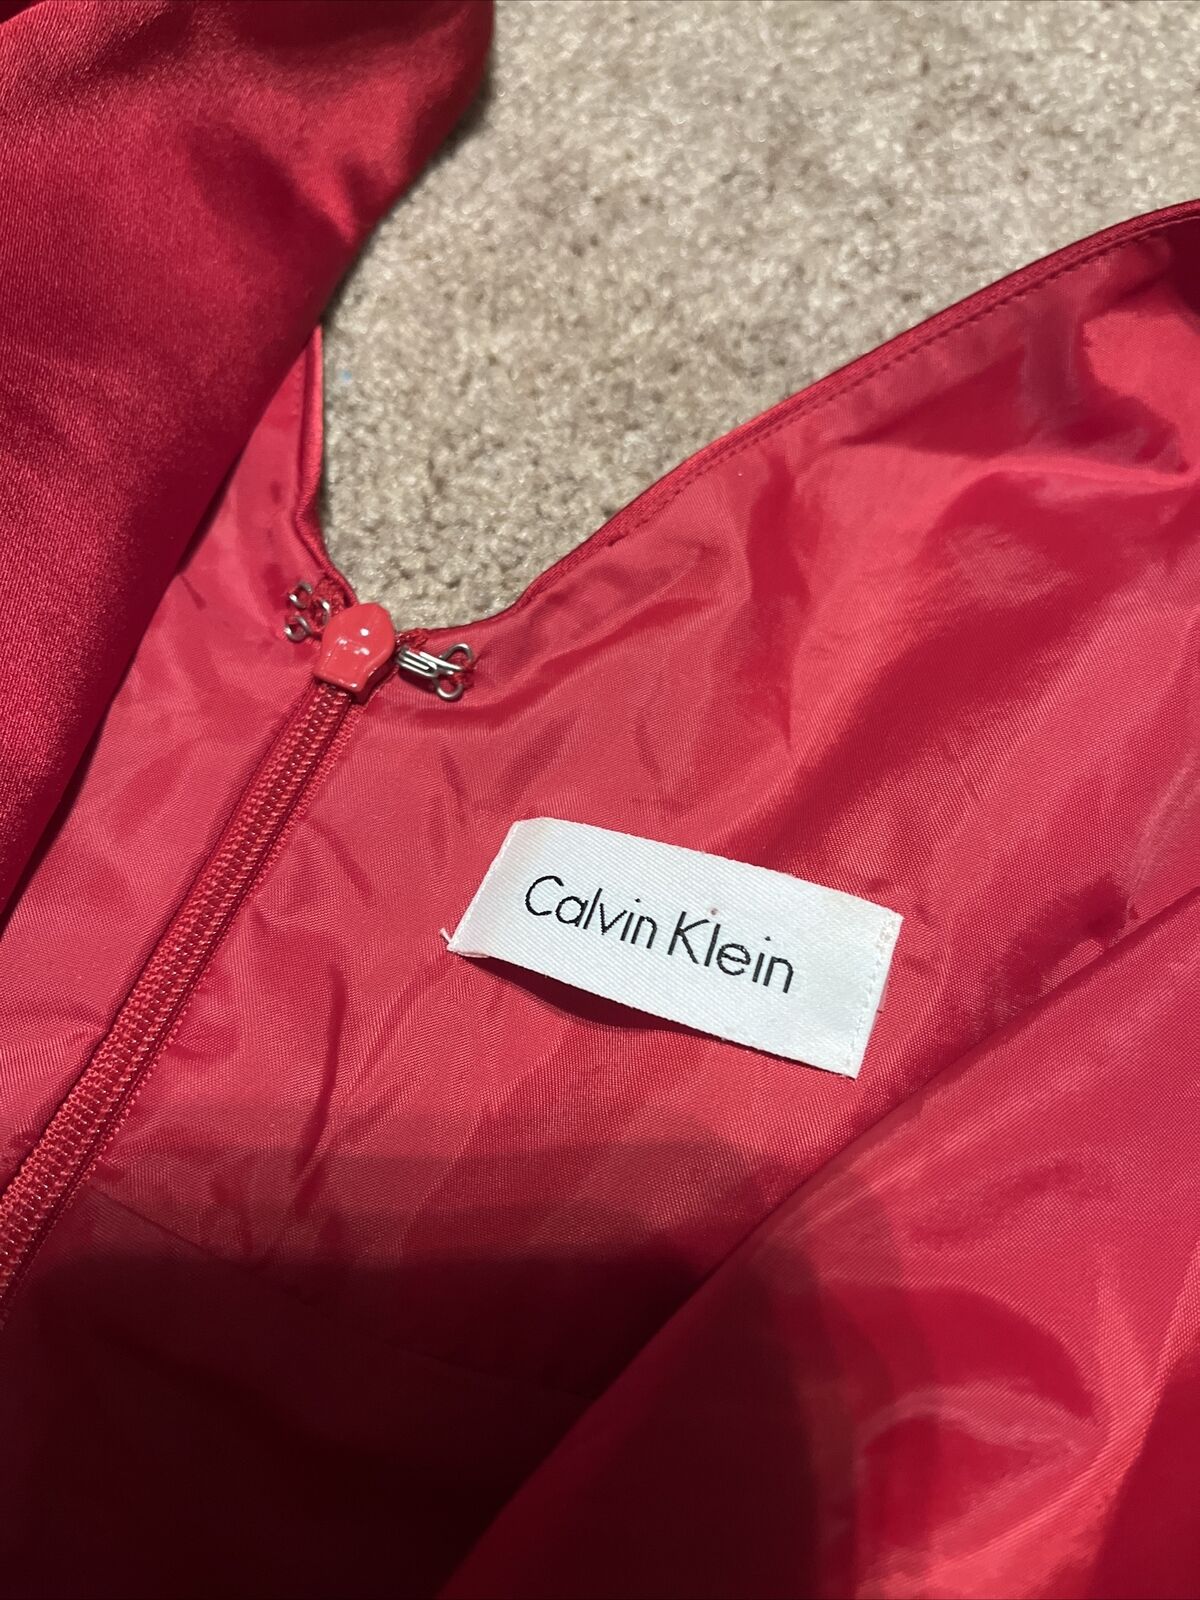 Womens Calvin Klein Red Satin Midi Dress Size Sma… - image 4